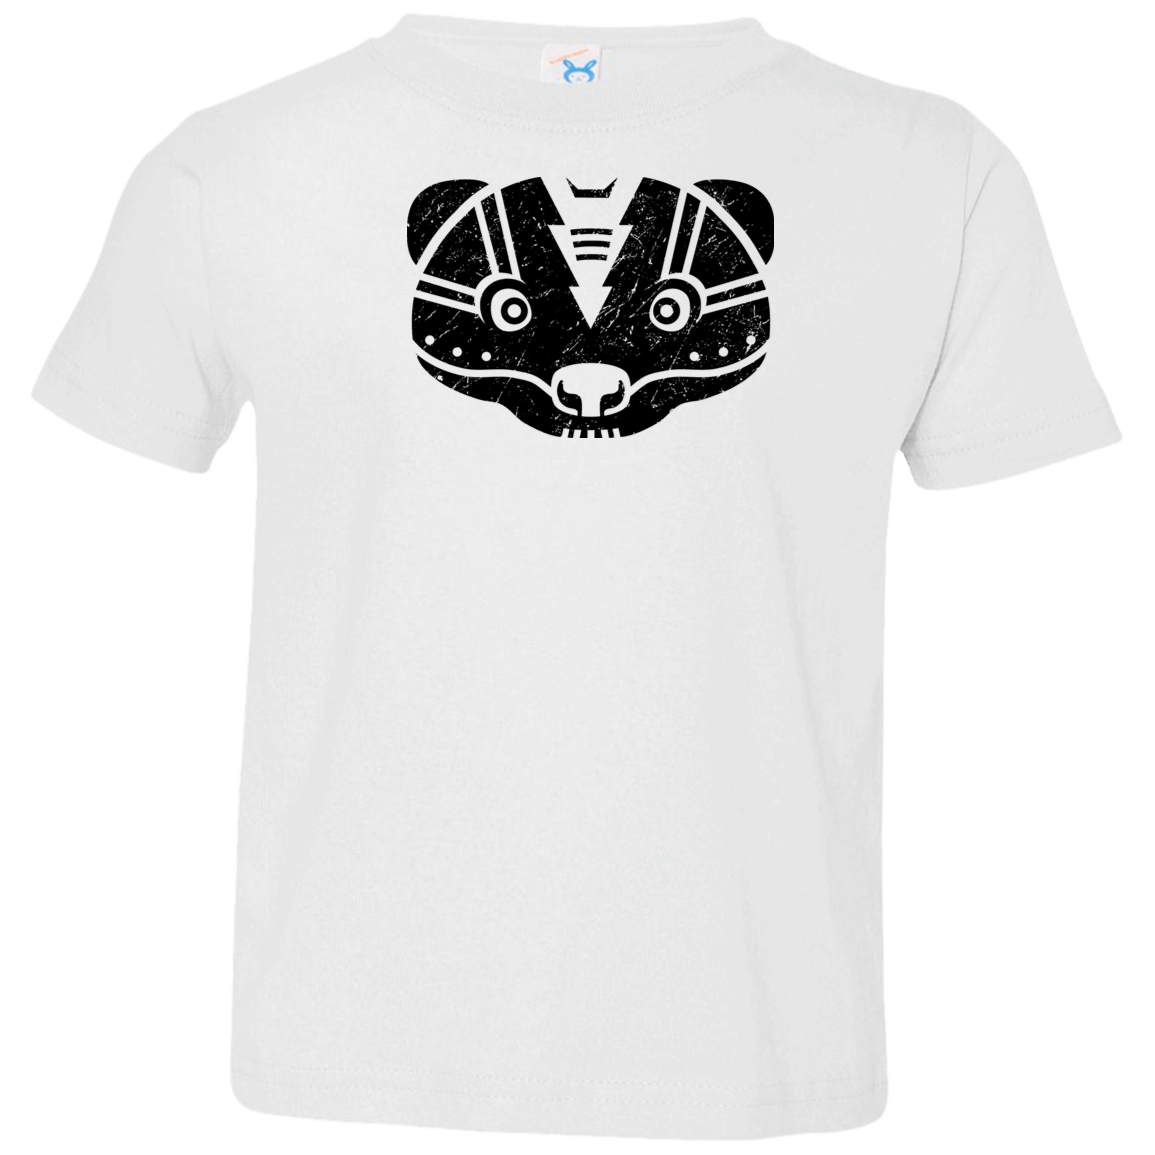 Black Distressed Emblem T-Shirt for Toddlers (Skunk/Stinker)